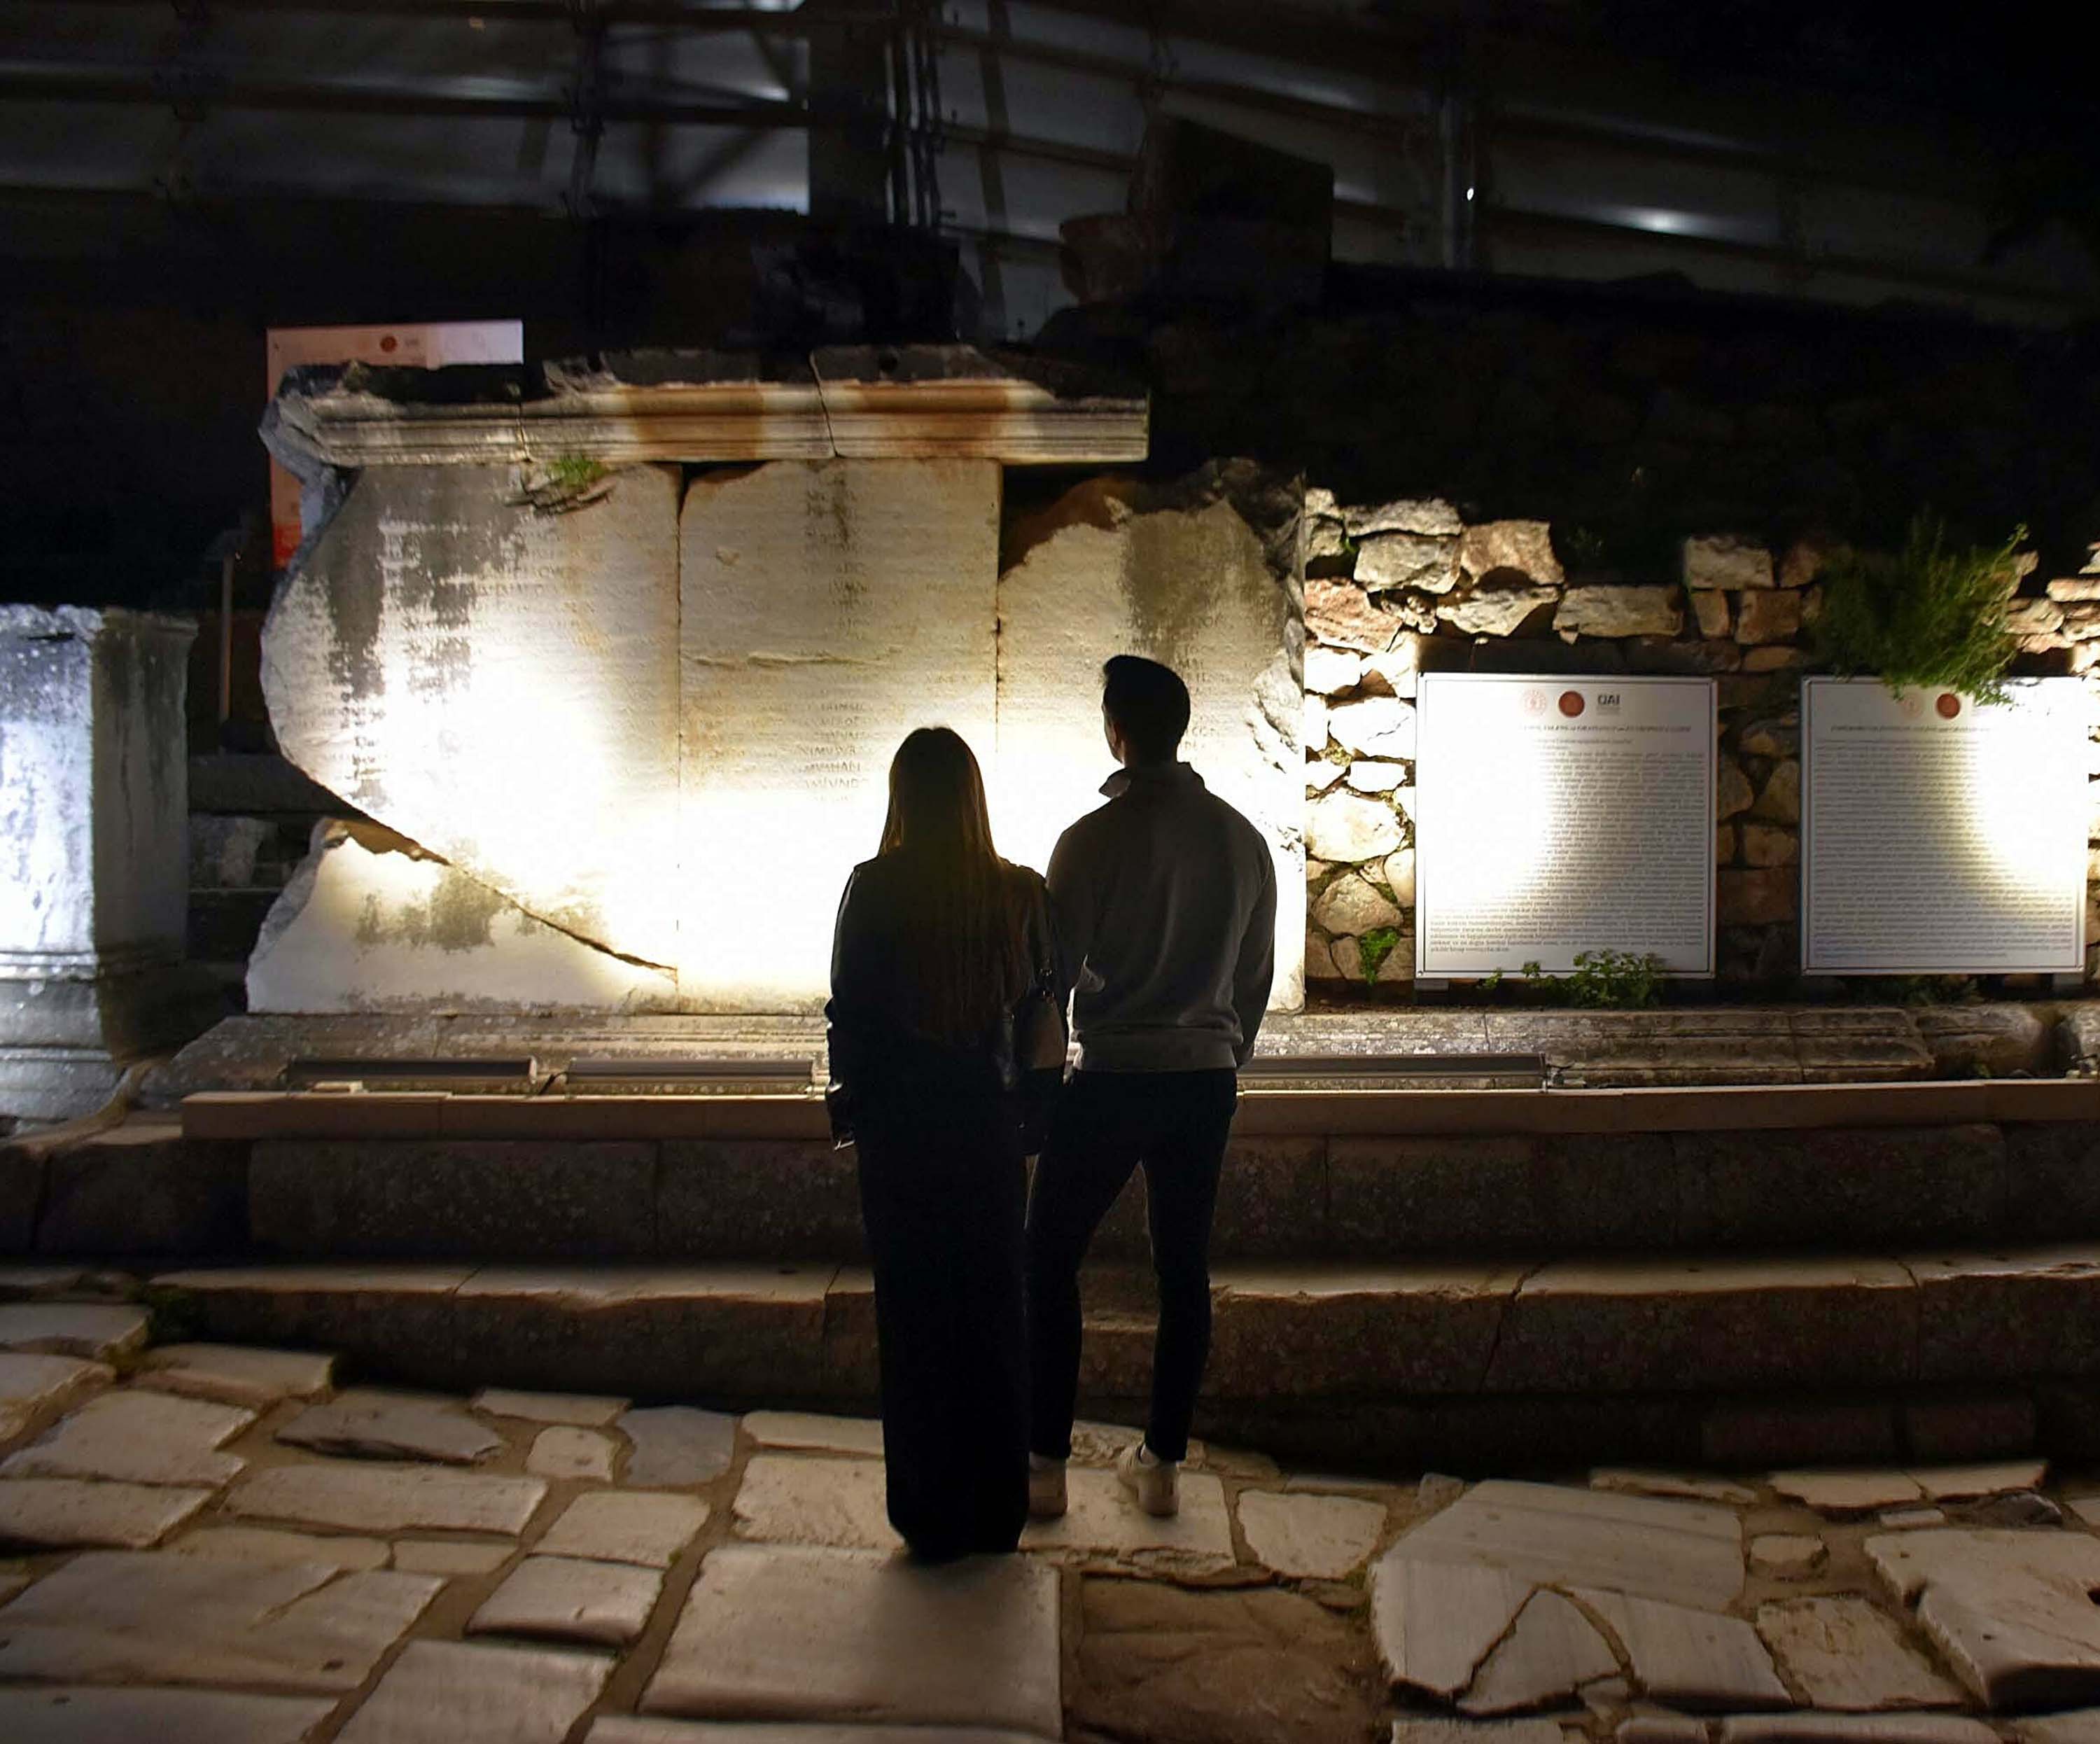 Efes Antik Kenti'nde gece müzeciliği dönemi!